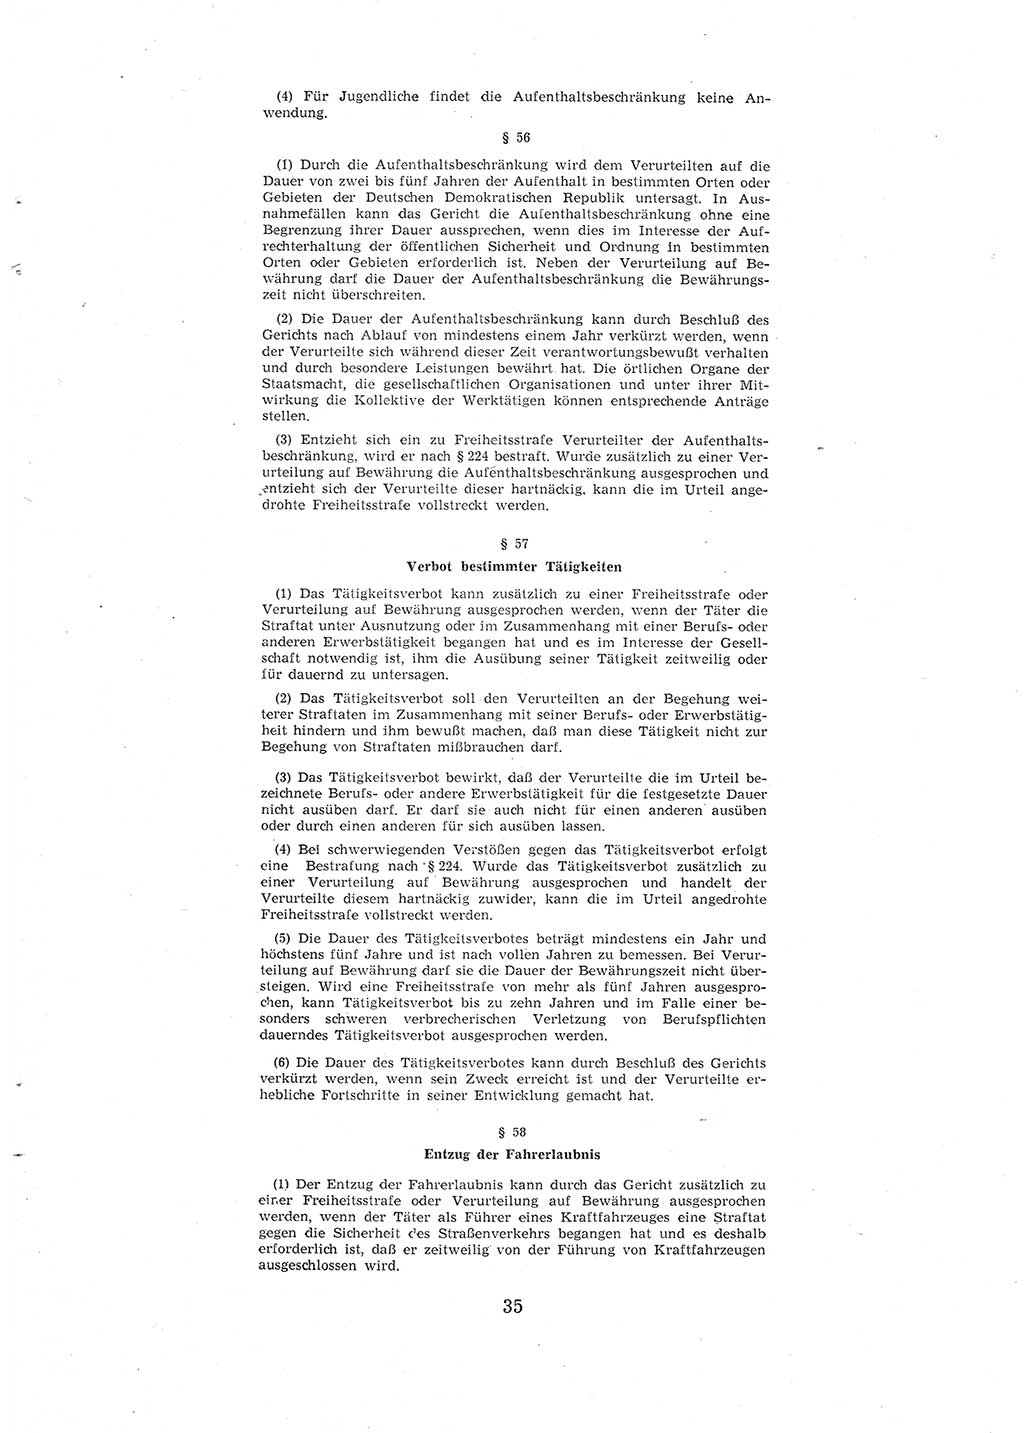 Entwurf des Strafgesetzbuches (StGB) der Deutschen Demokratischen Republik (DDR) 1967, Seite 35 (Entw. StGB DDR 1967, S. 35)